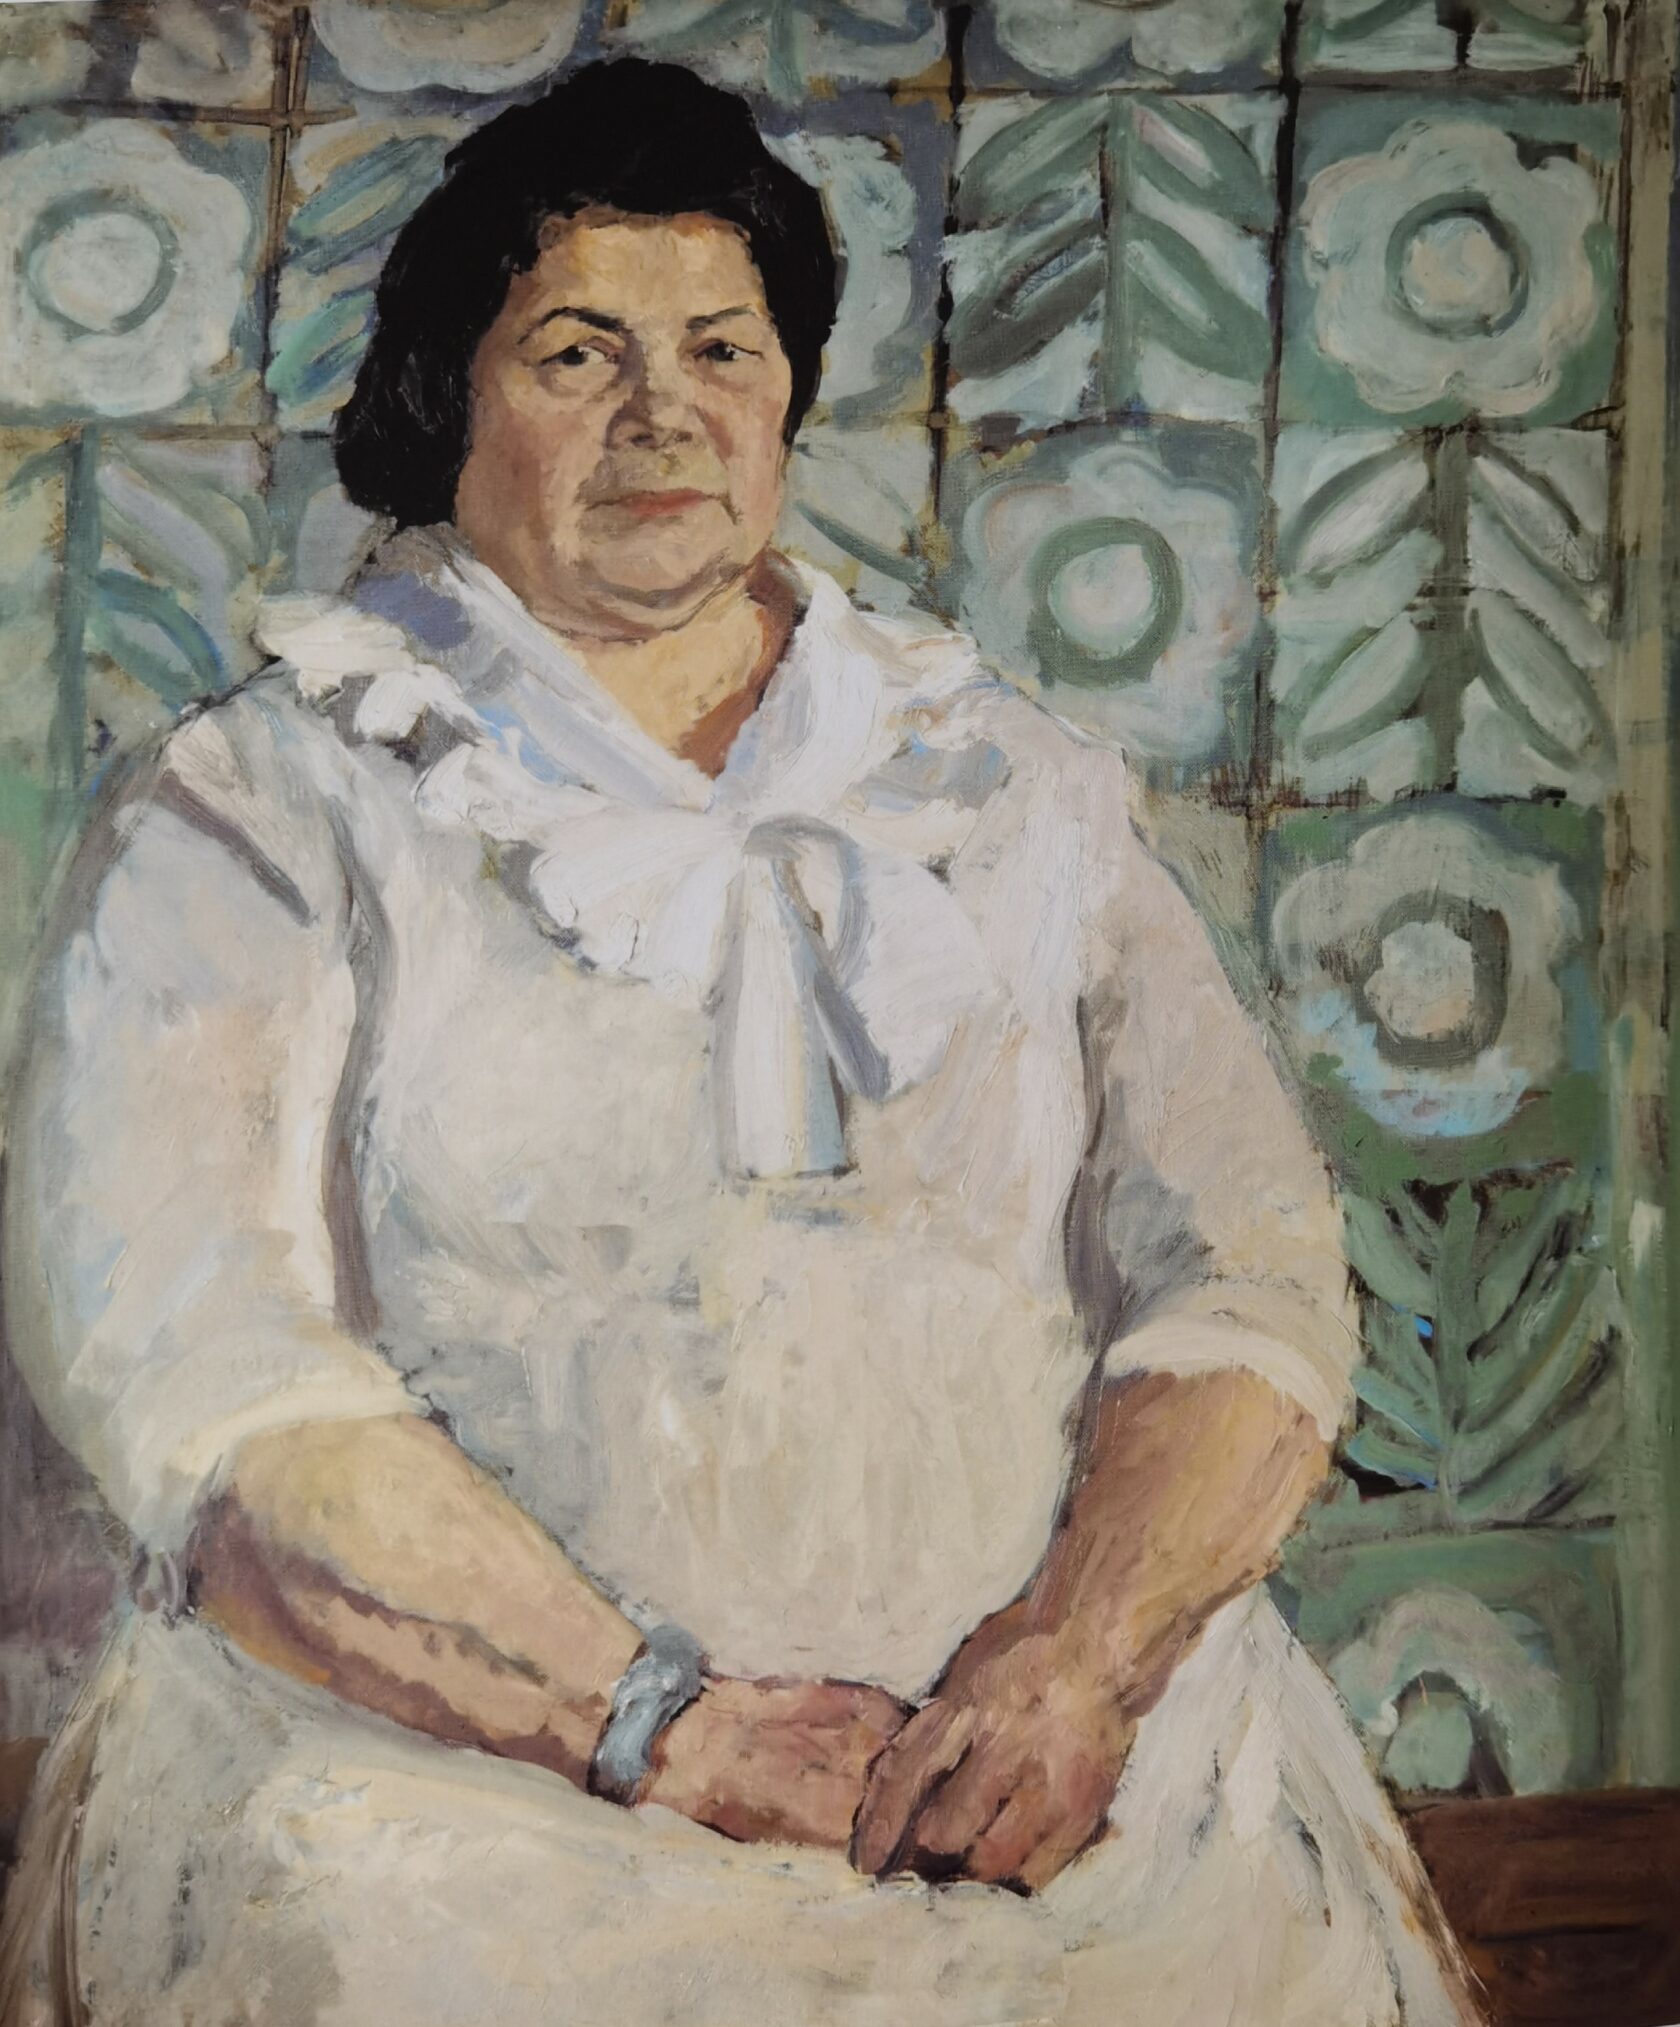 Портрет керамистки Нины Малышевой, 1979 г.